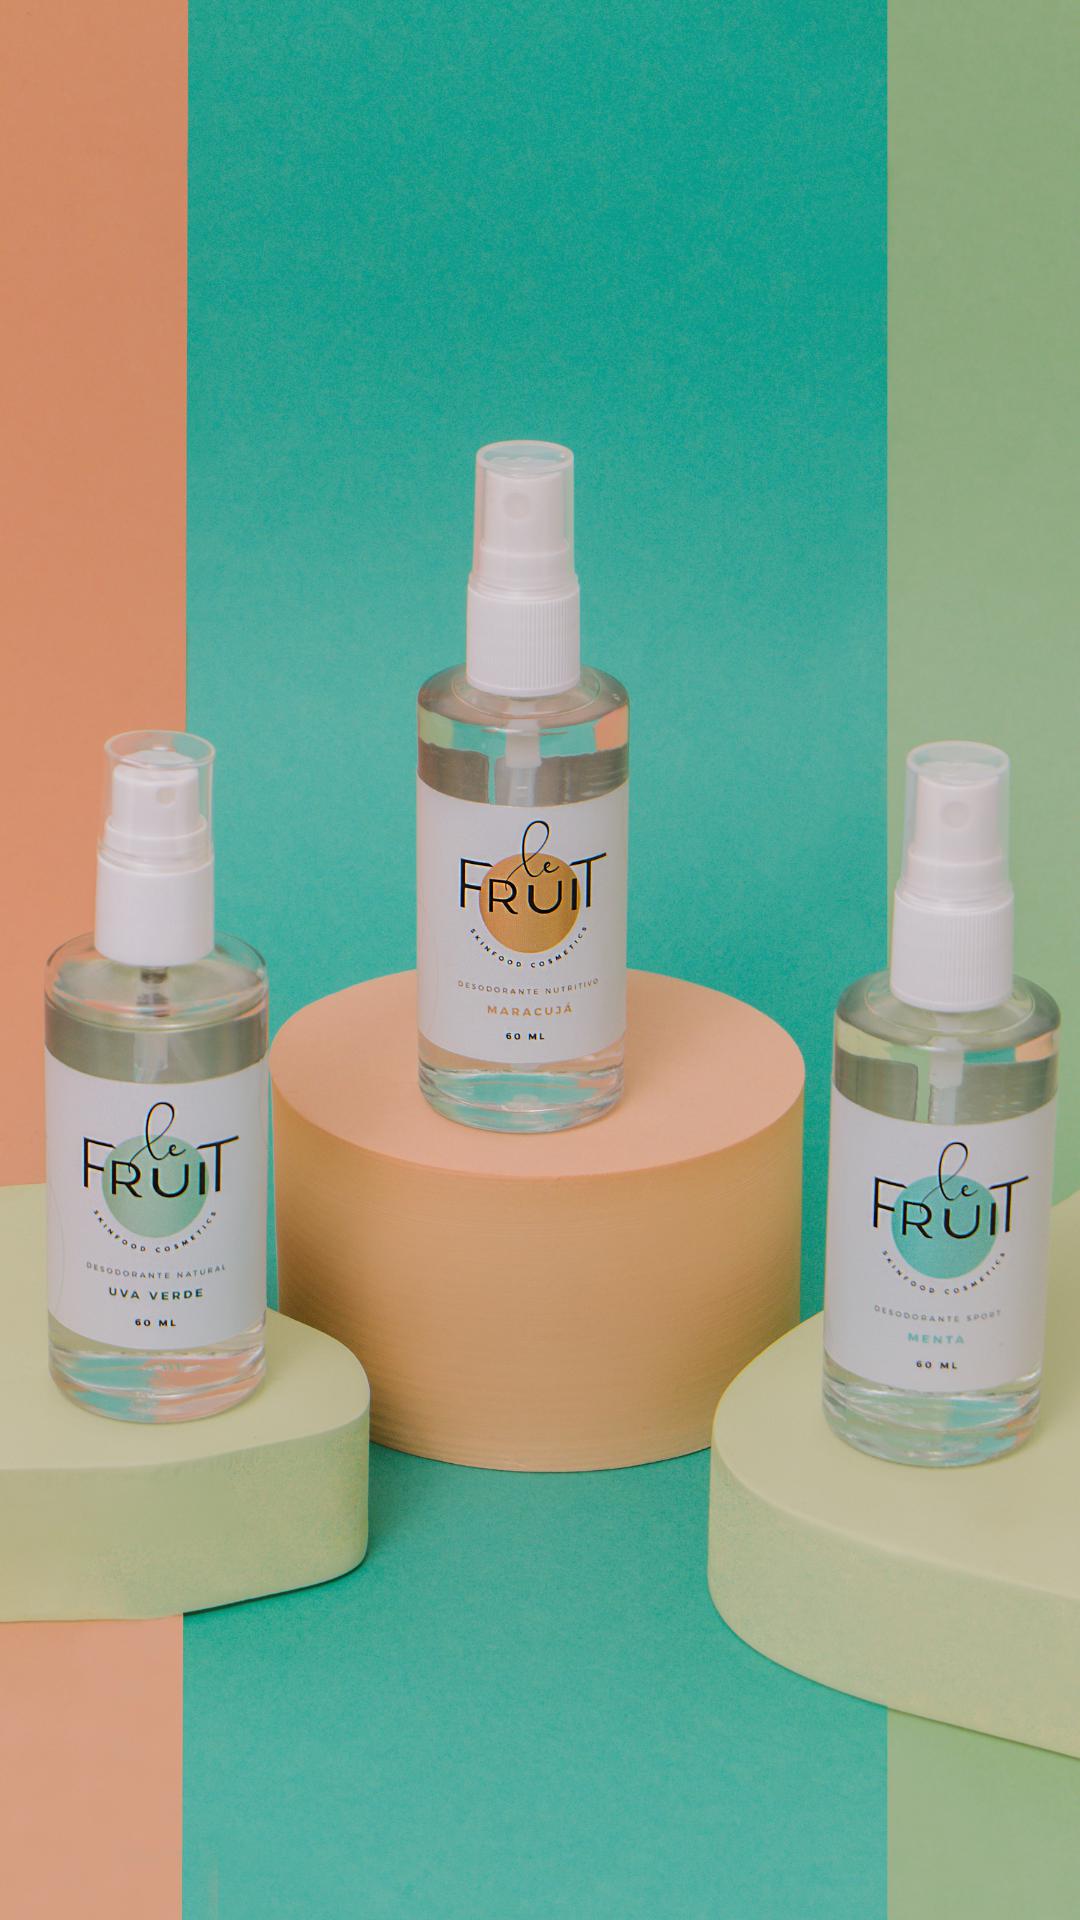 Imagem com os três desodorantes principais da Le Fruit na frente de um fundo colorido. Mostra os três frascos de vidro dos desodorantes de Maracujá, Uva Verde e Menta.